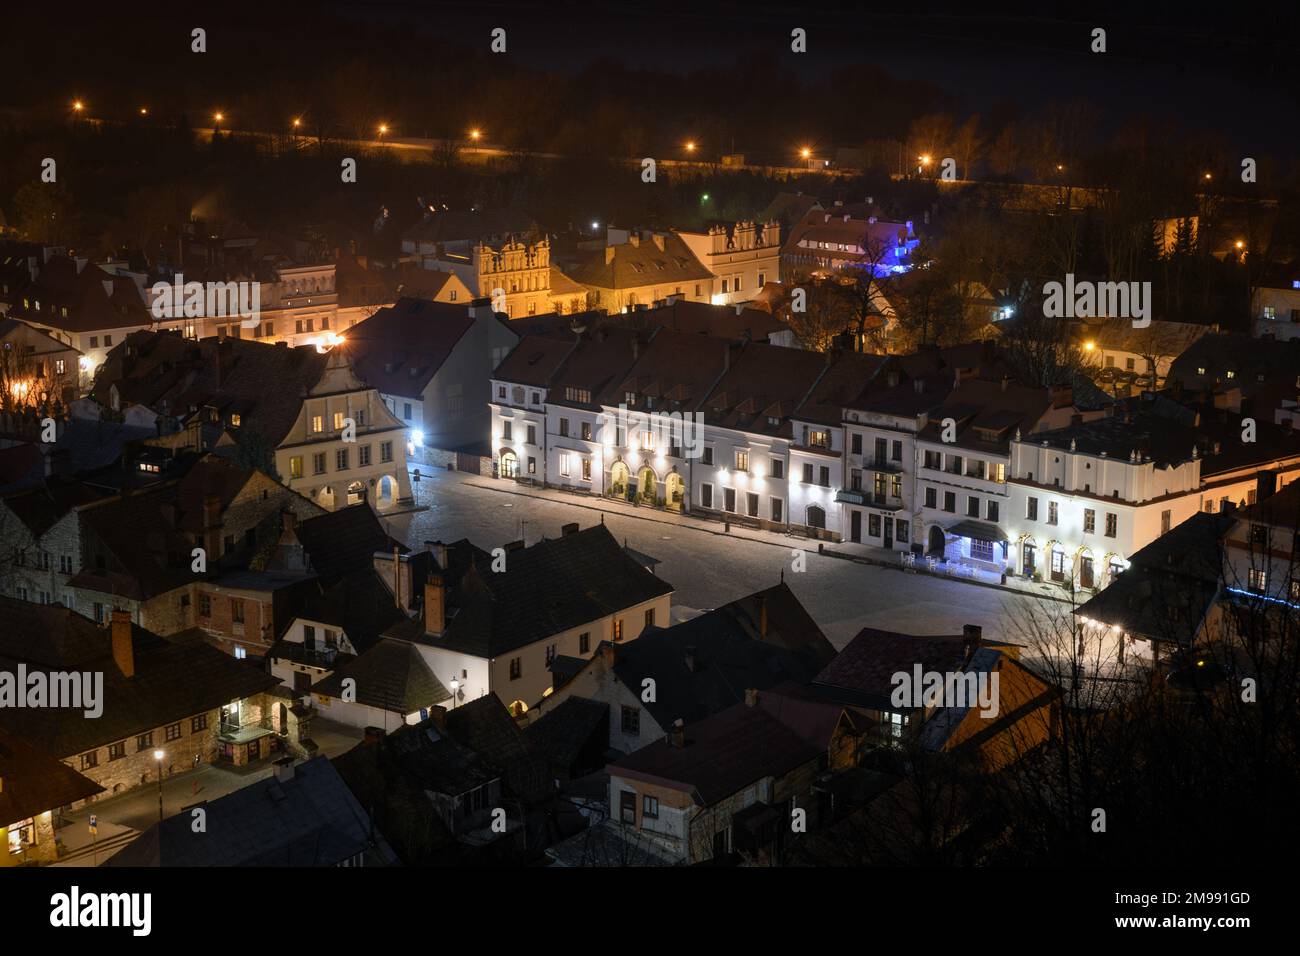 Ein Nachtpanorama von Kazimierz Dolny - eine kleine Stadt am rechten (östlichen) Ufer der Weichsel, eine bedeutende Touristenattraktion. Stockfoto